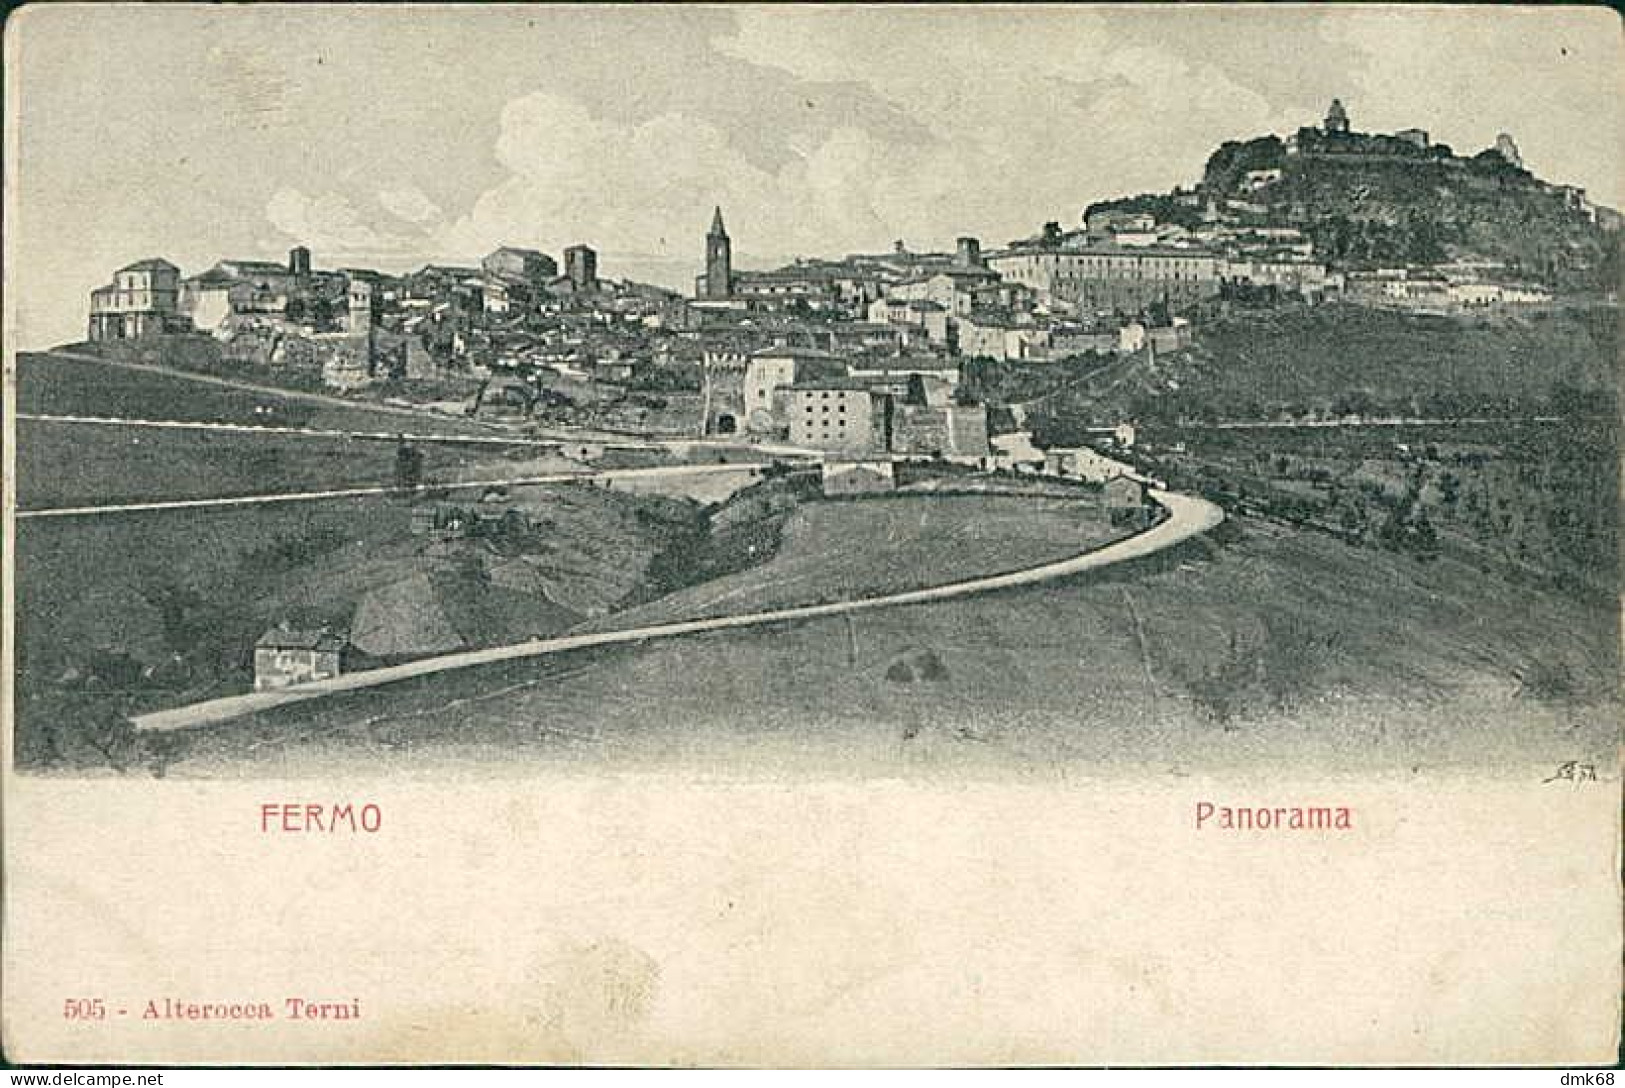 FERMO - PANORAMA - EDIZIONE ALTEROCCA - 1900s (15949) - Fermo